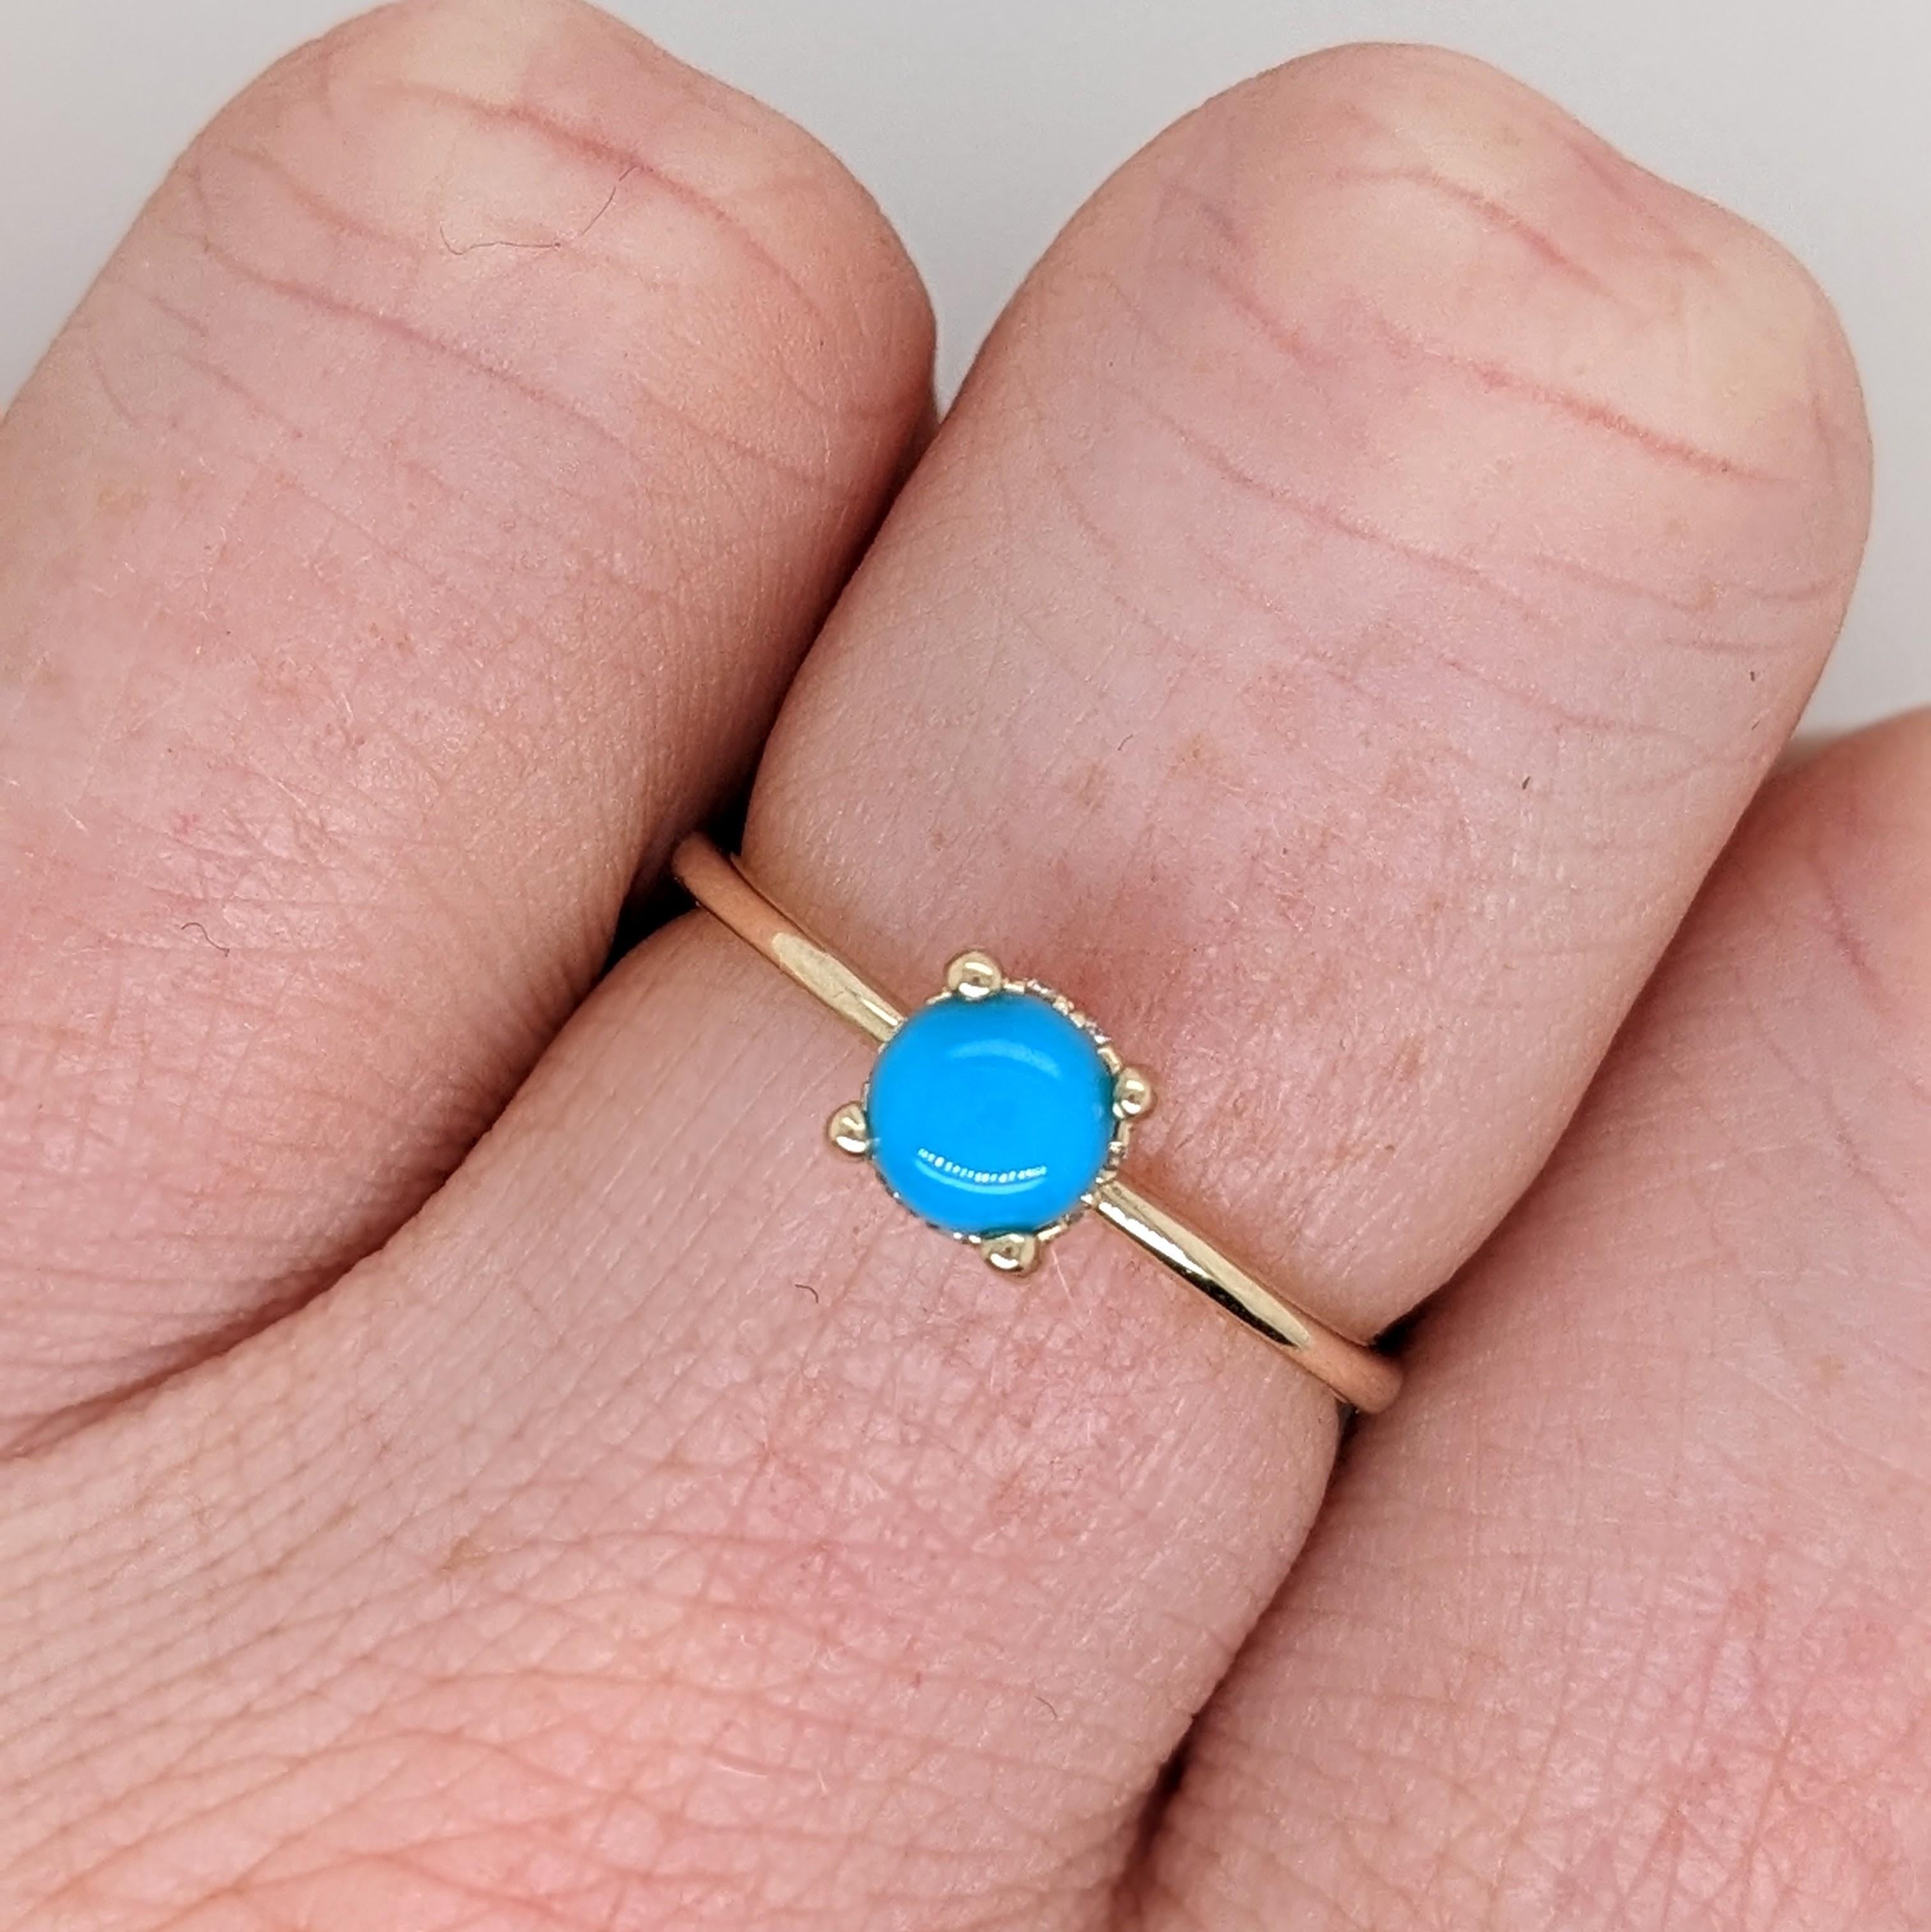 Dieser Ring besteht aus einem 5 mm großen Türkis mit natürlichen Diamanten aus Erdminen. Ein schlichter, zierlicher Ring, perfekt für die Minimalistin in deinem Leben oder um jemandem sein erstes Schmuckstück zu schenken :)

Spezifikationen

Artikel